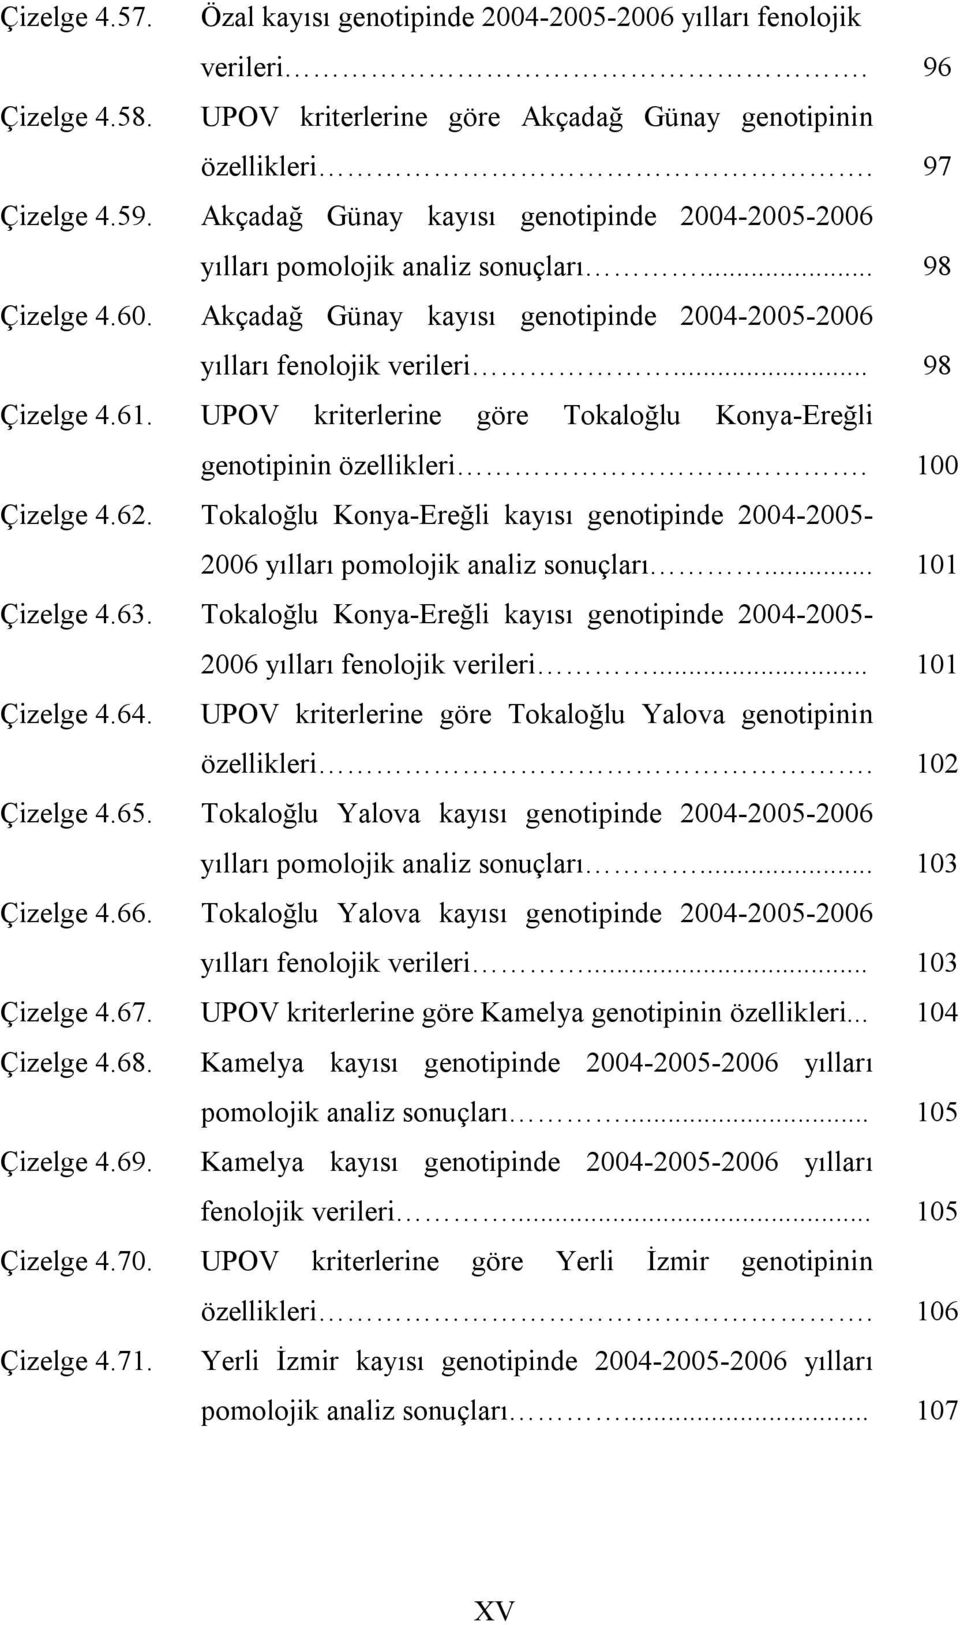 UPOV kriterlerine göre Tokaloğlu Konya-Ereğli genotipinin özellikleri. 100 Çizelge 4.62. Tokaloğlu Konya-Ereğli kayısı genotipinde 2004-2005- 2006 yılları pomolojik analiz sonuçları... 101 Çizelge 4.